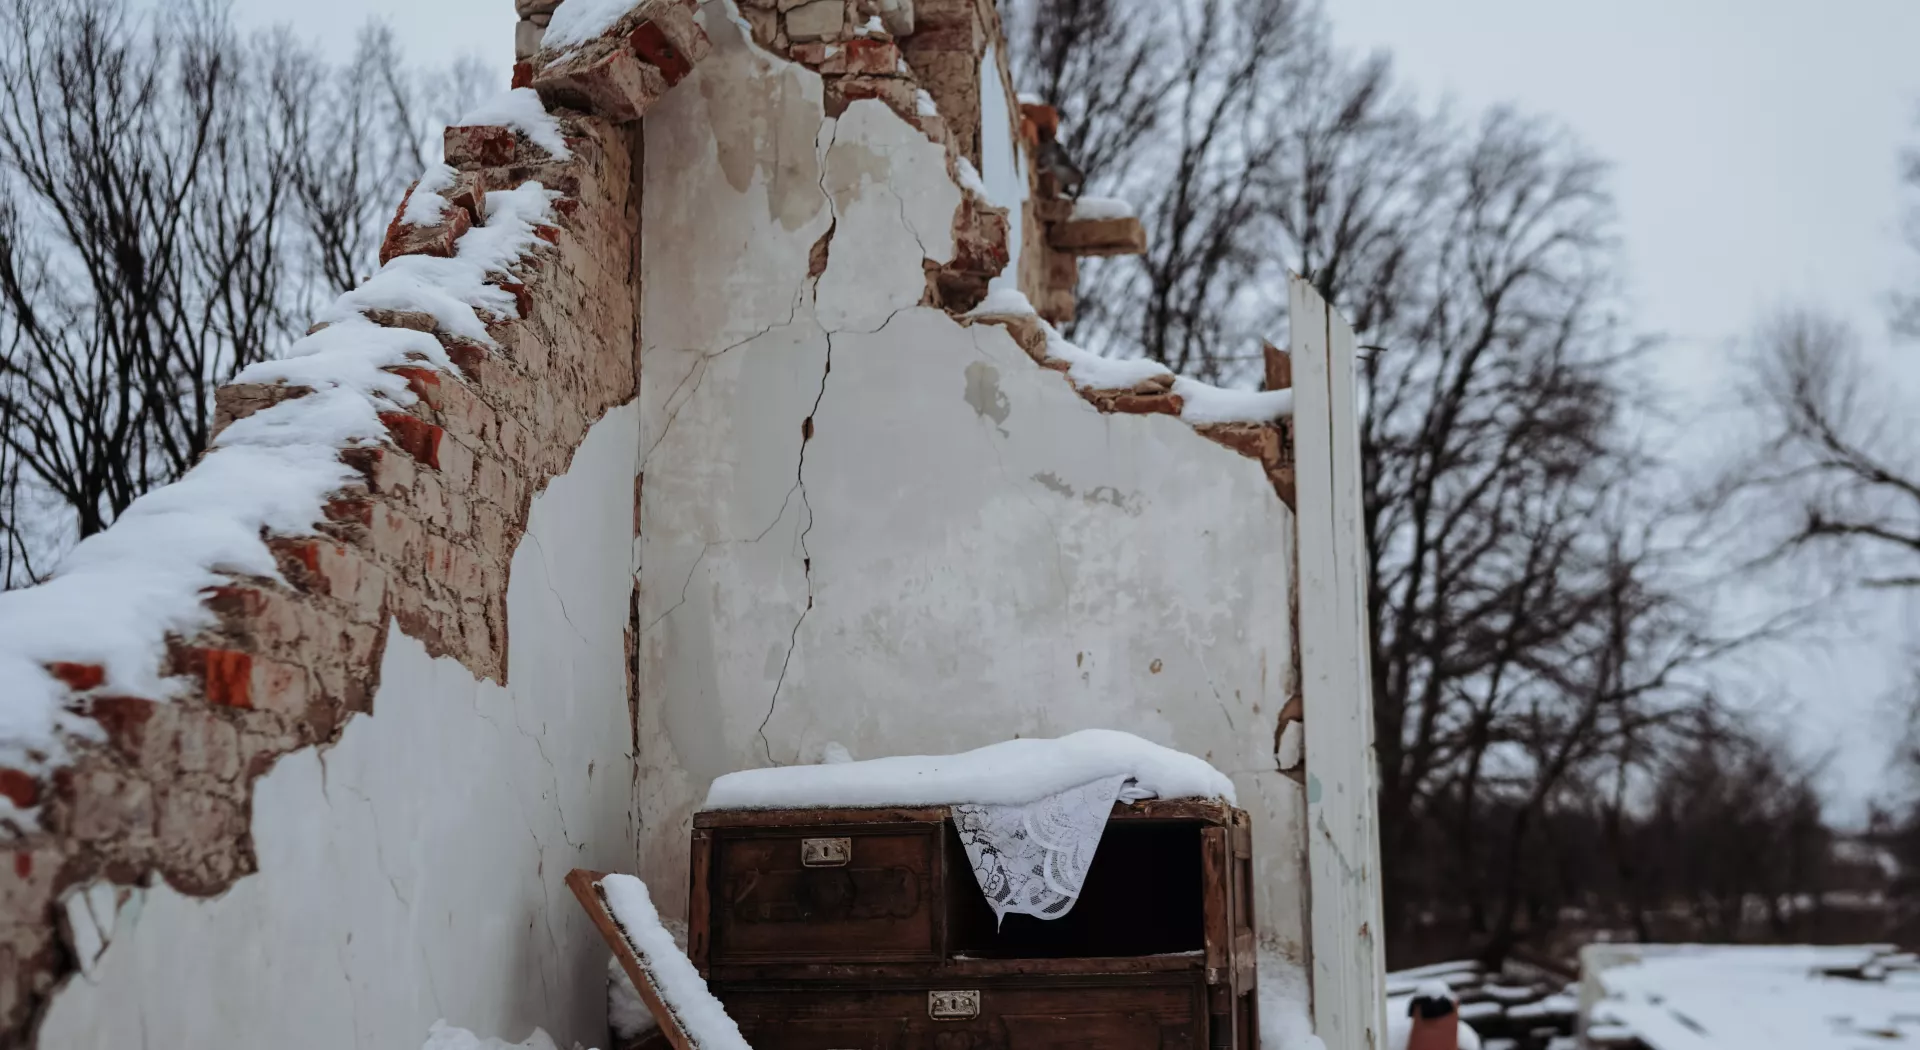 In der Kälte flüchten: Zerstörtes Haus im Schnee in der Ukraine